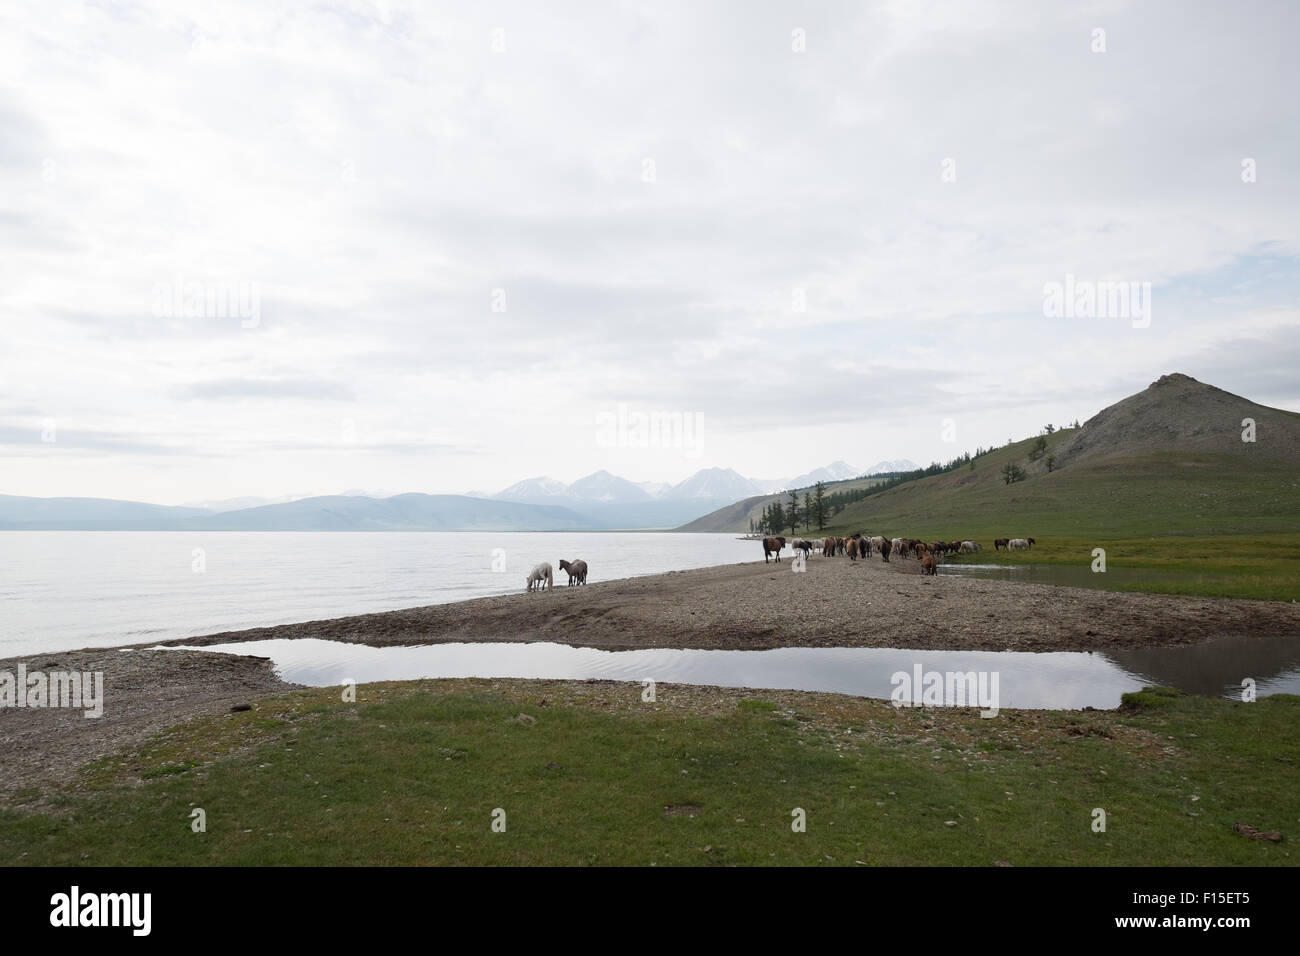 Les chevaux boire à partir d'un lac. Les chevaux de Mongolie au lac Hovsgol. Banque D'Images